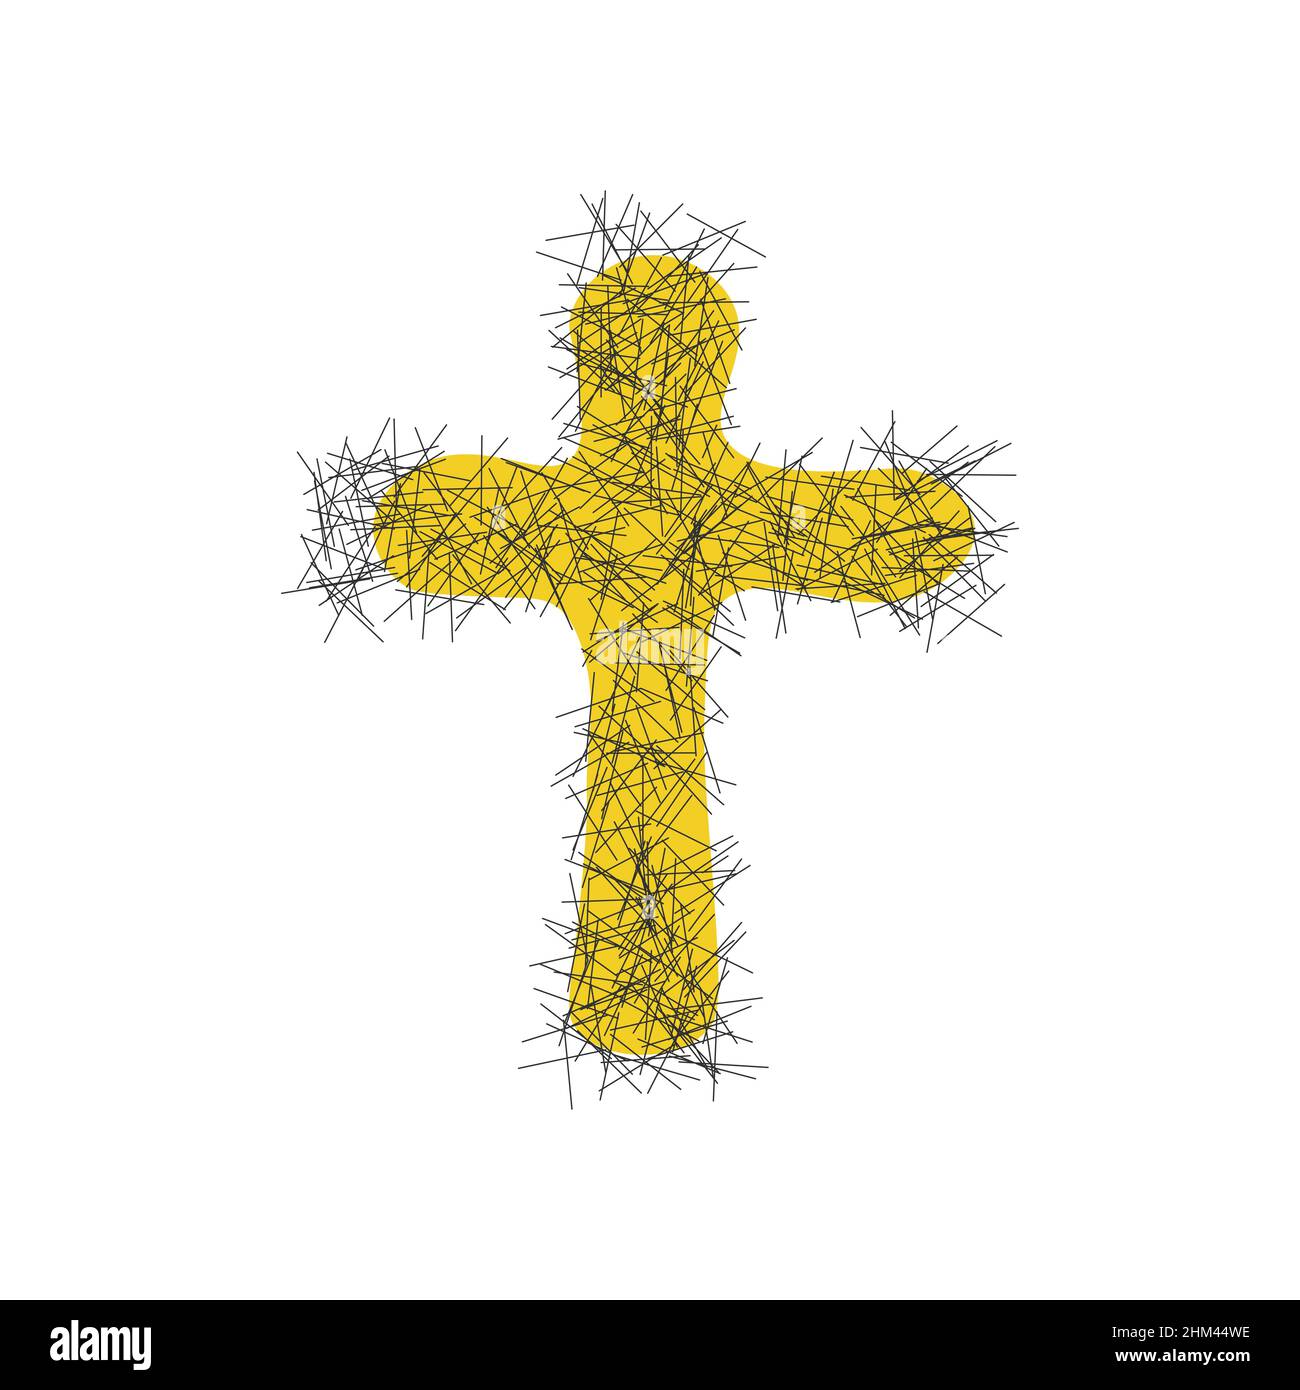 Croce cristiana di pasqua disegnata a mano con fiore giallo. Illustrazione del vettore di scorta isolata su sfondo bianco. Illustrazione Vettoriale